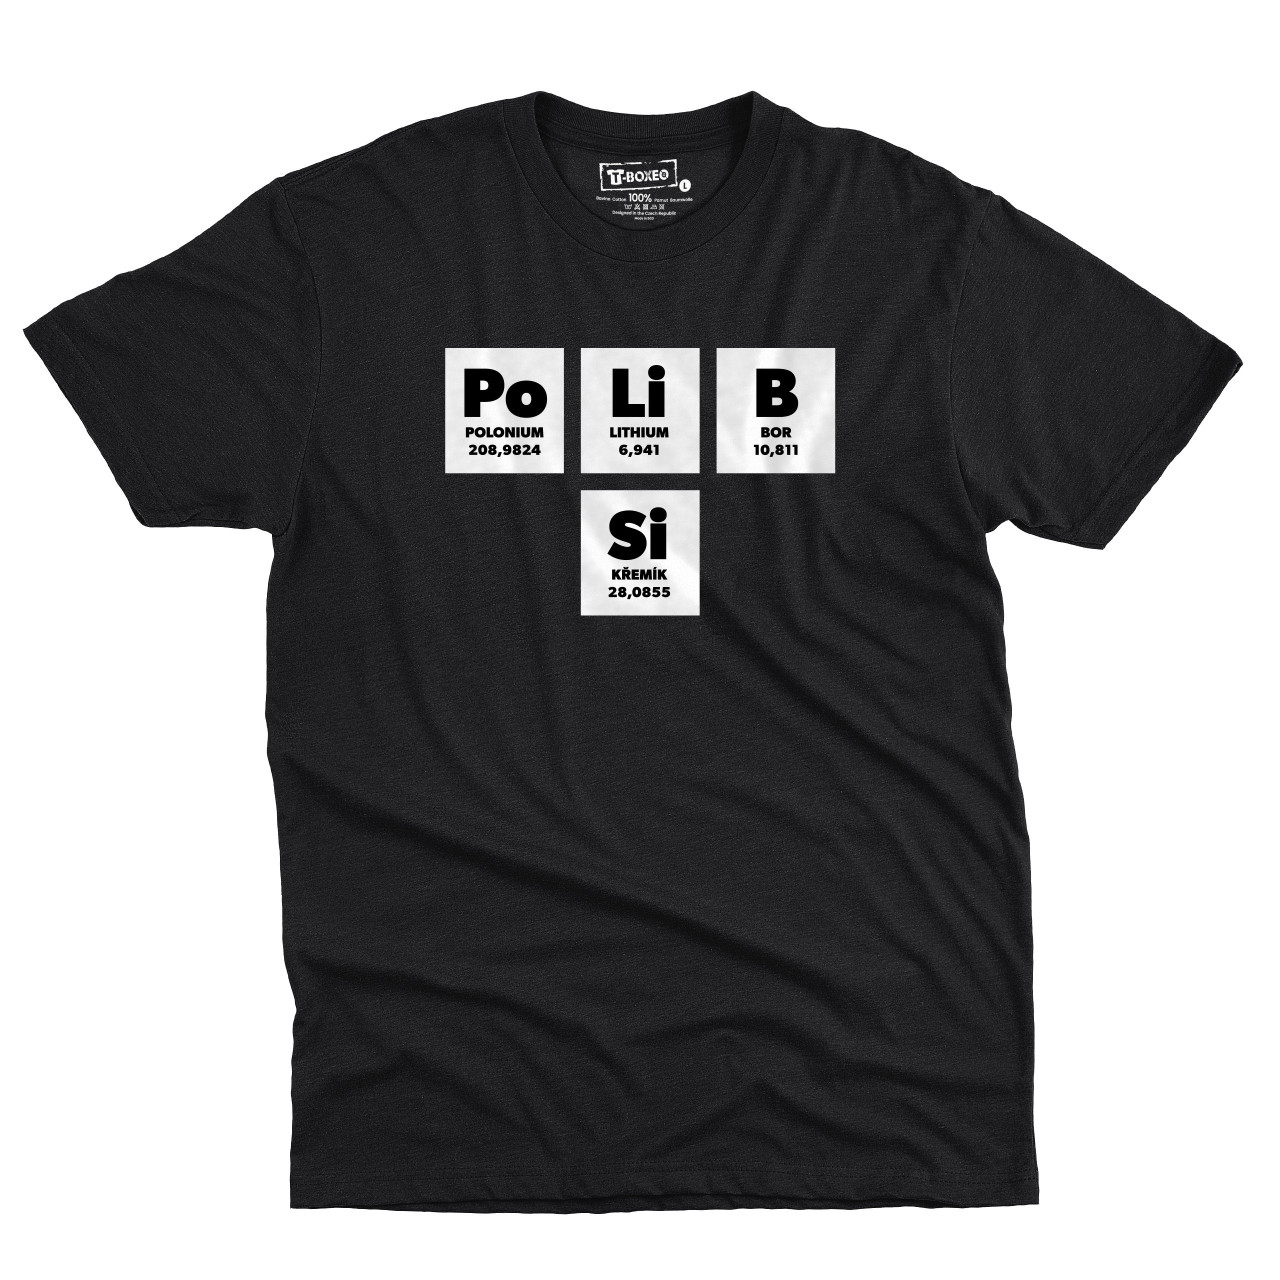 Pánské tričko s potiskem “Po Li B Si”